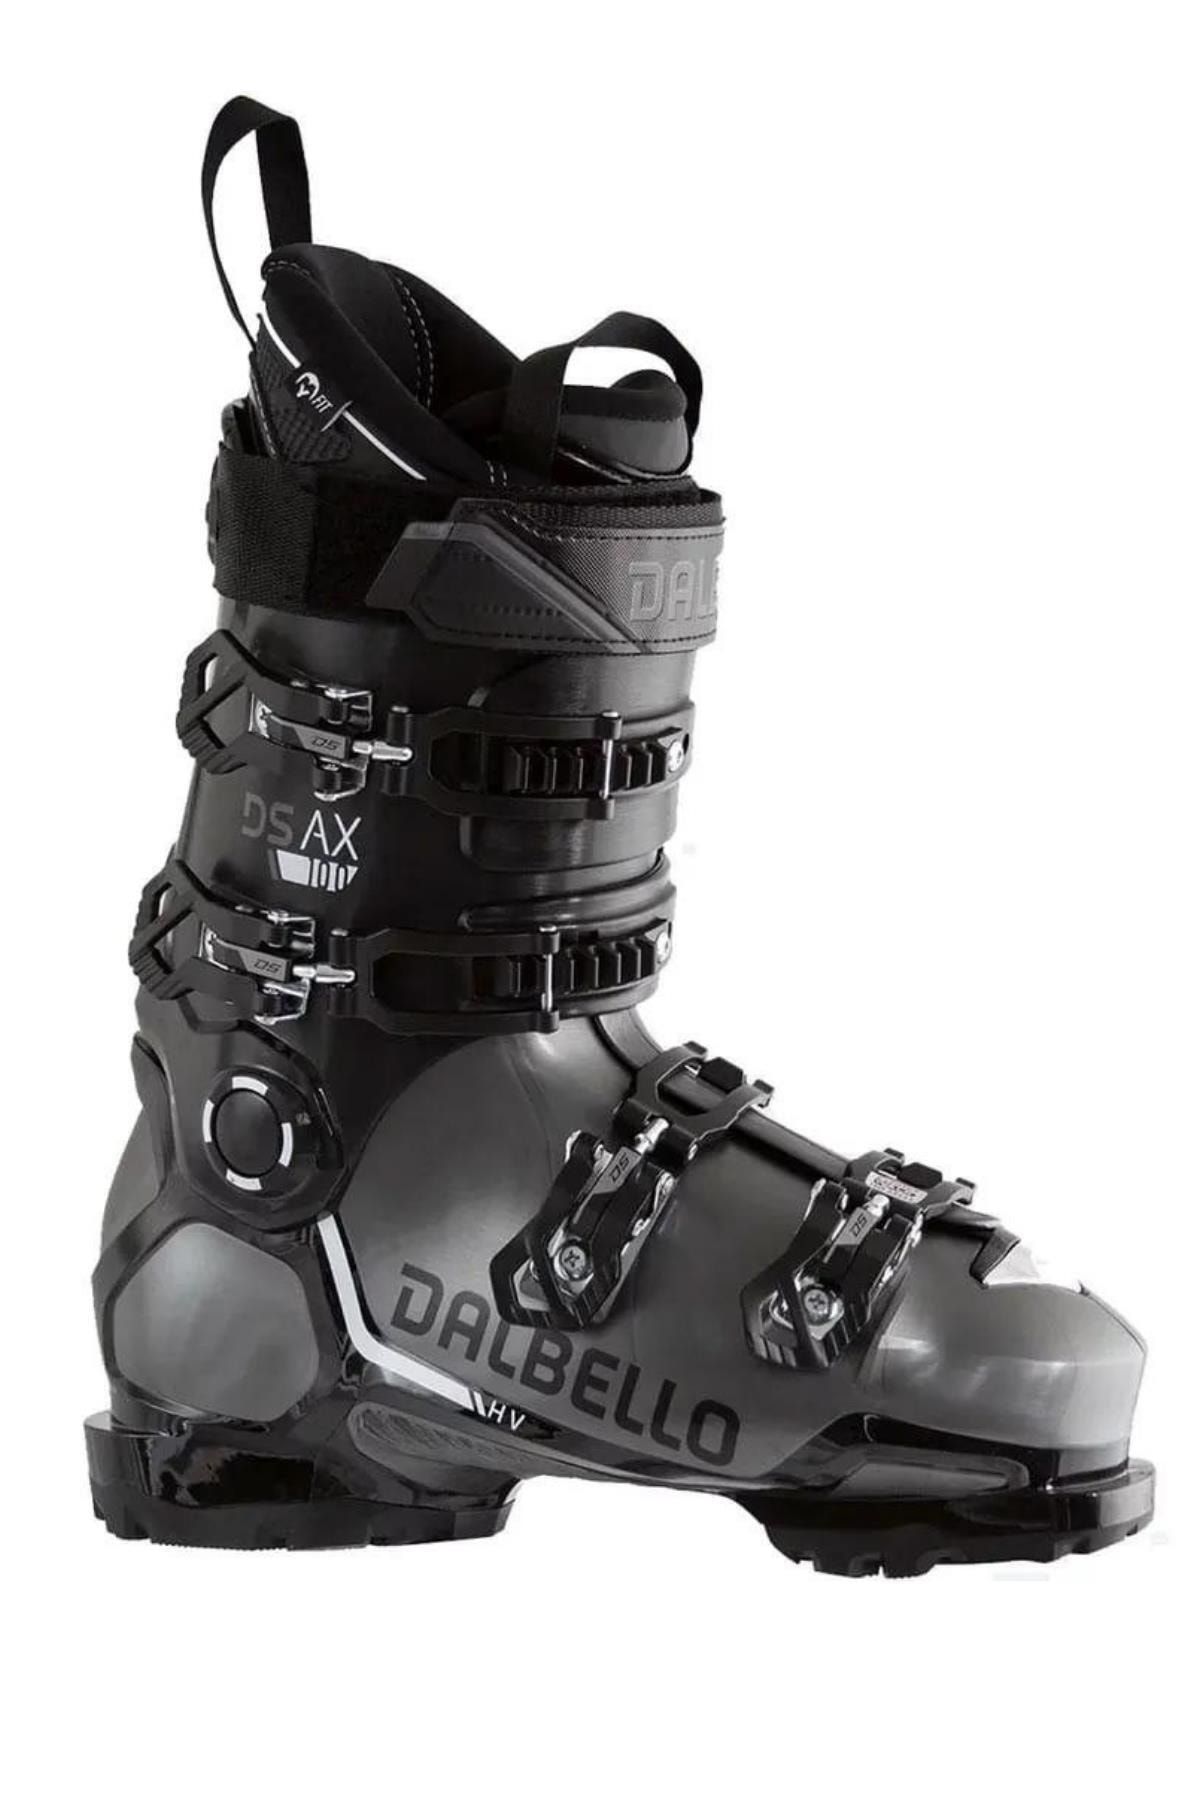 Dalbello -ds Ax 100 Gw Kayak Ayakkabısı